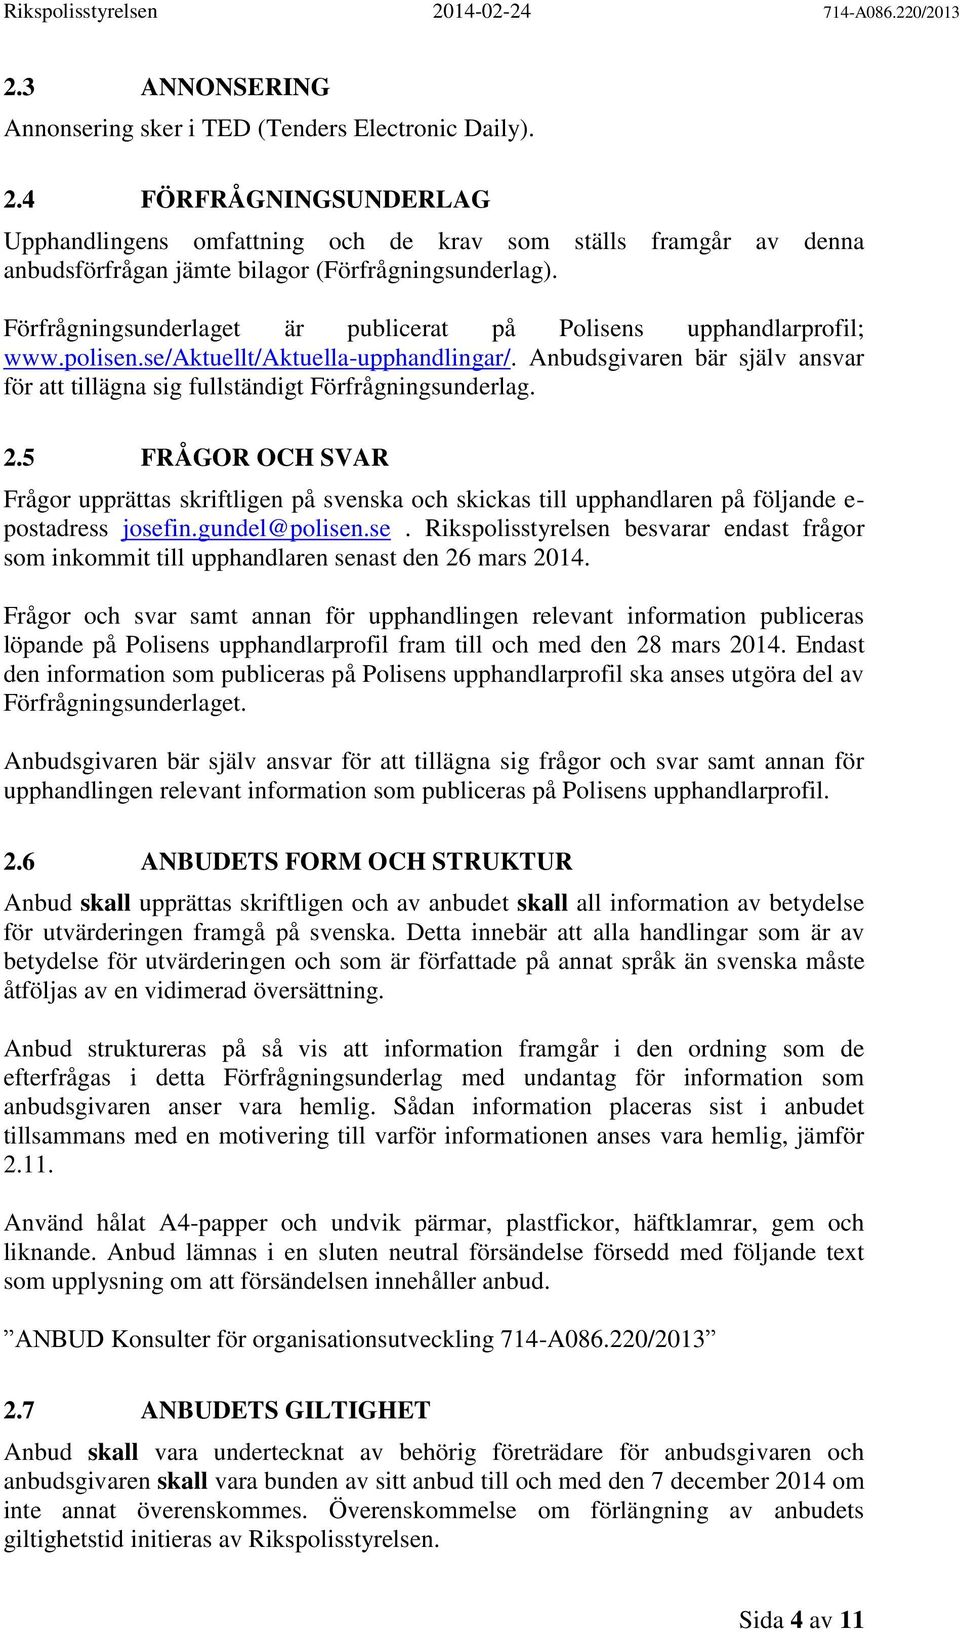 Förfrågningsunderlaget är publicerat på Polisens upphandlarprofil; www.polisen.se/aktuellt/aktuella-upphandlingar/.